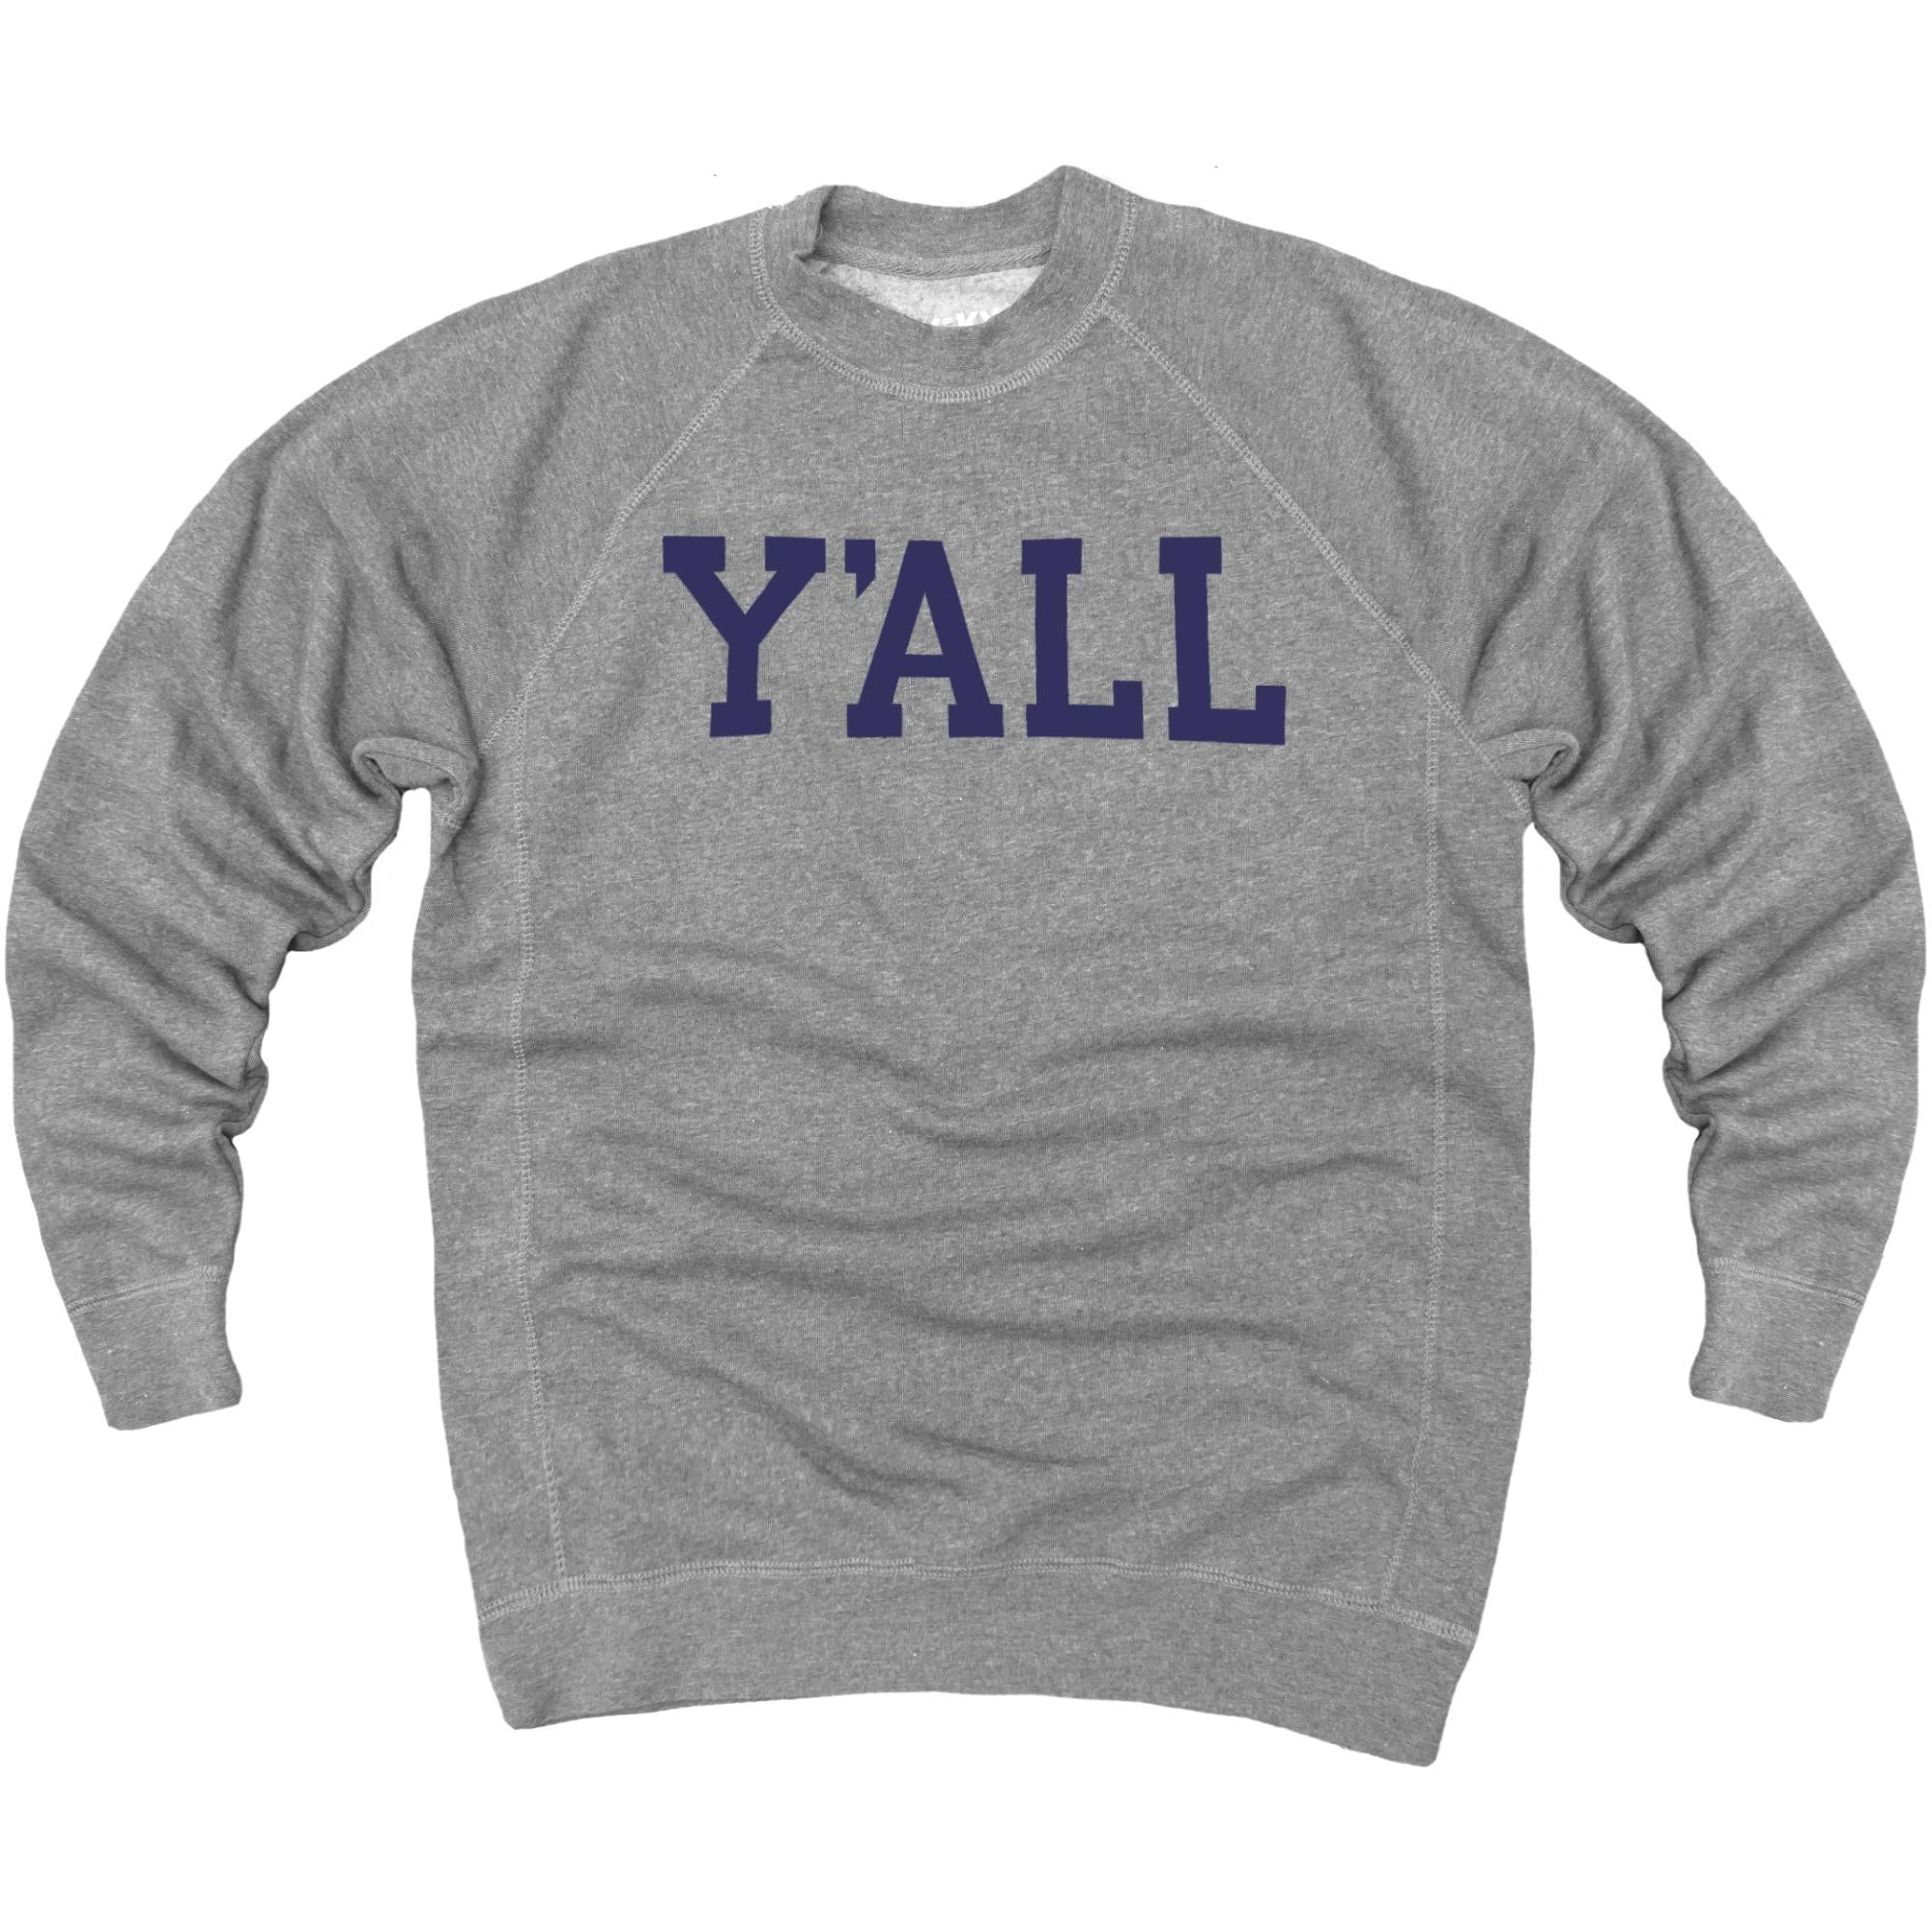 Y'ALL Sweatshirt (Grey)